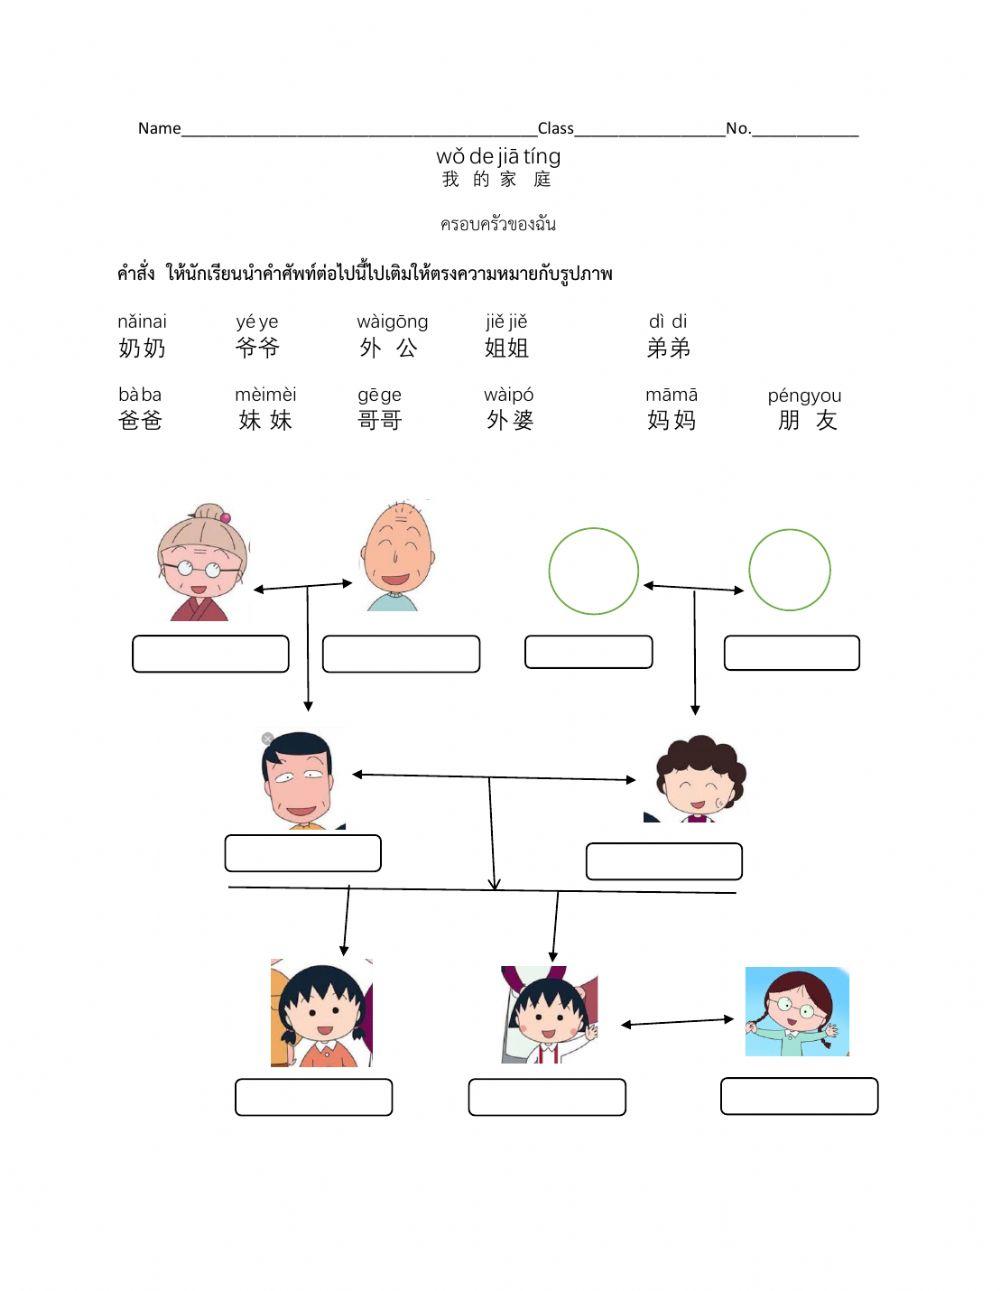 Maruko family tree